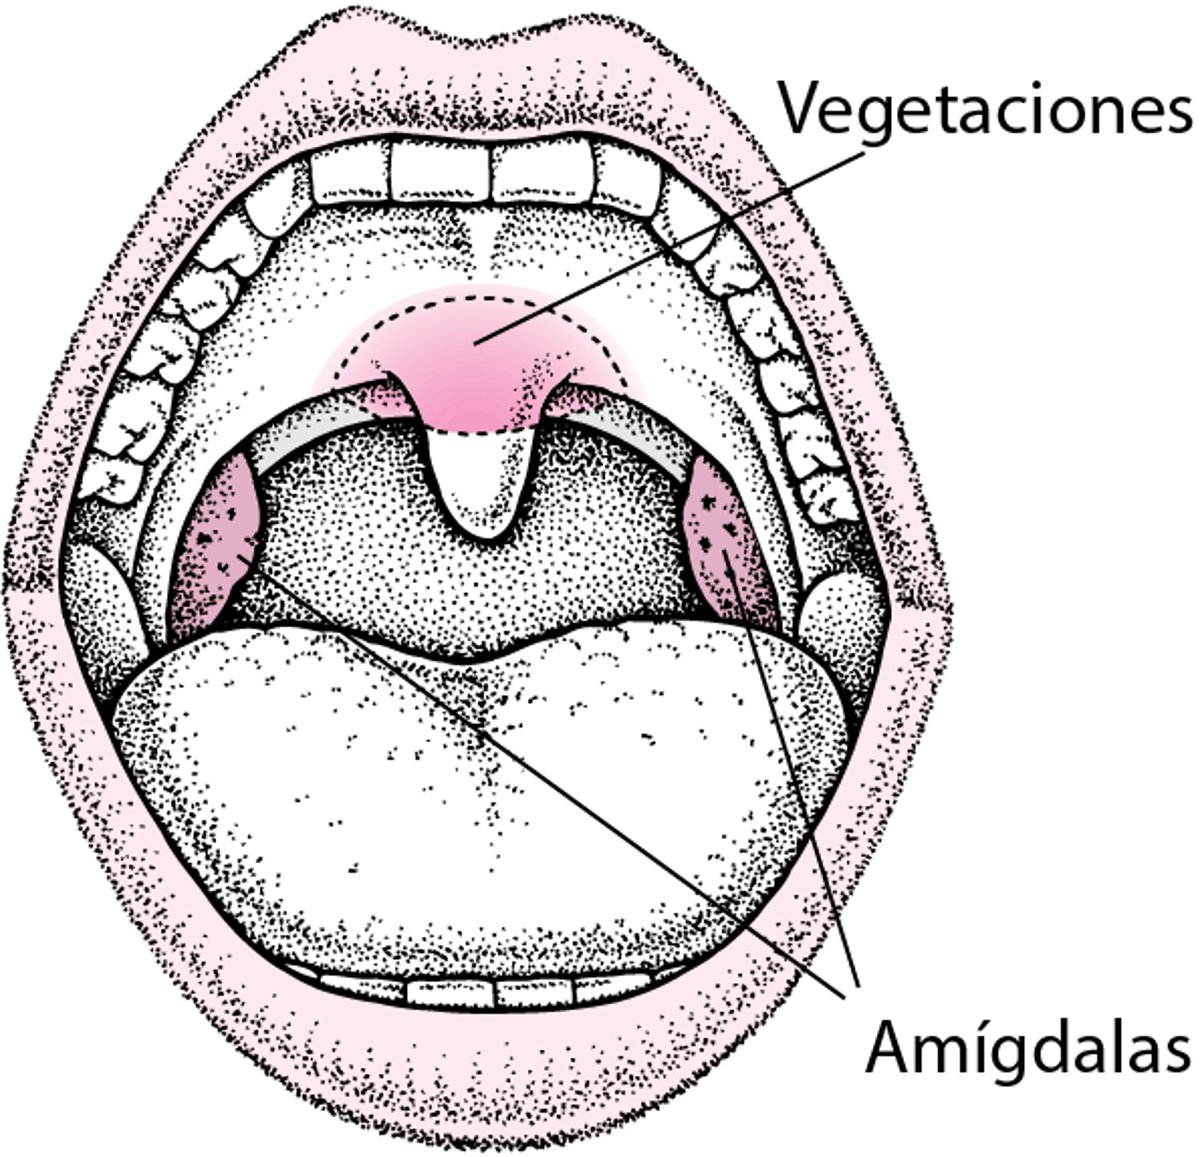 Localización de las amígdalas y las vegetaciones